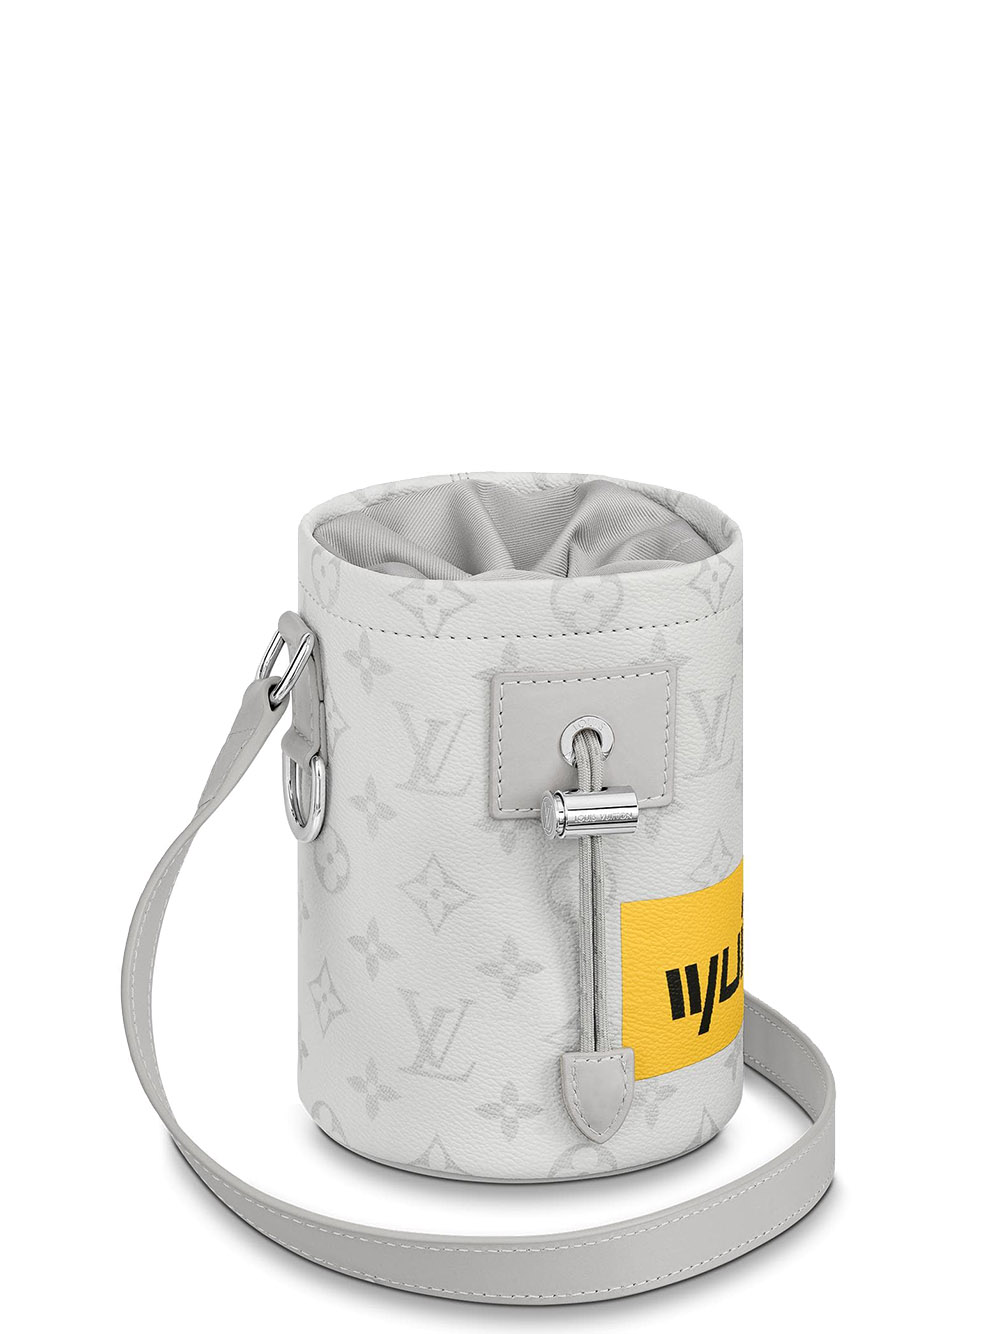 Túi đeo chéo vuông Louis Vuitton Trắng hoa vân Xám quai Xanh phối xích  fullbox bill thẻ Like Auth on web  TANYA